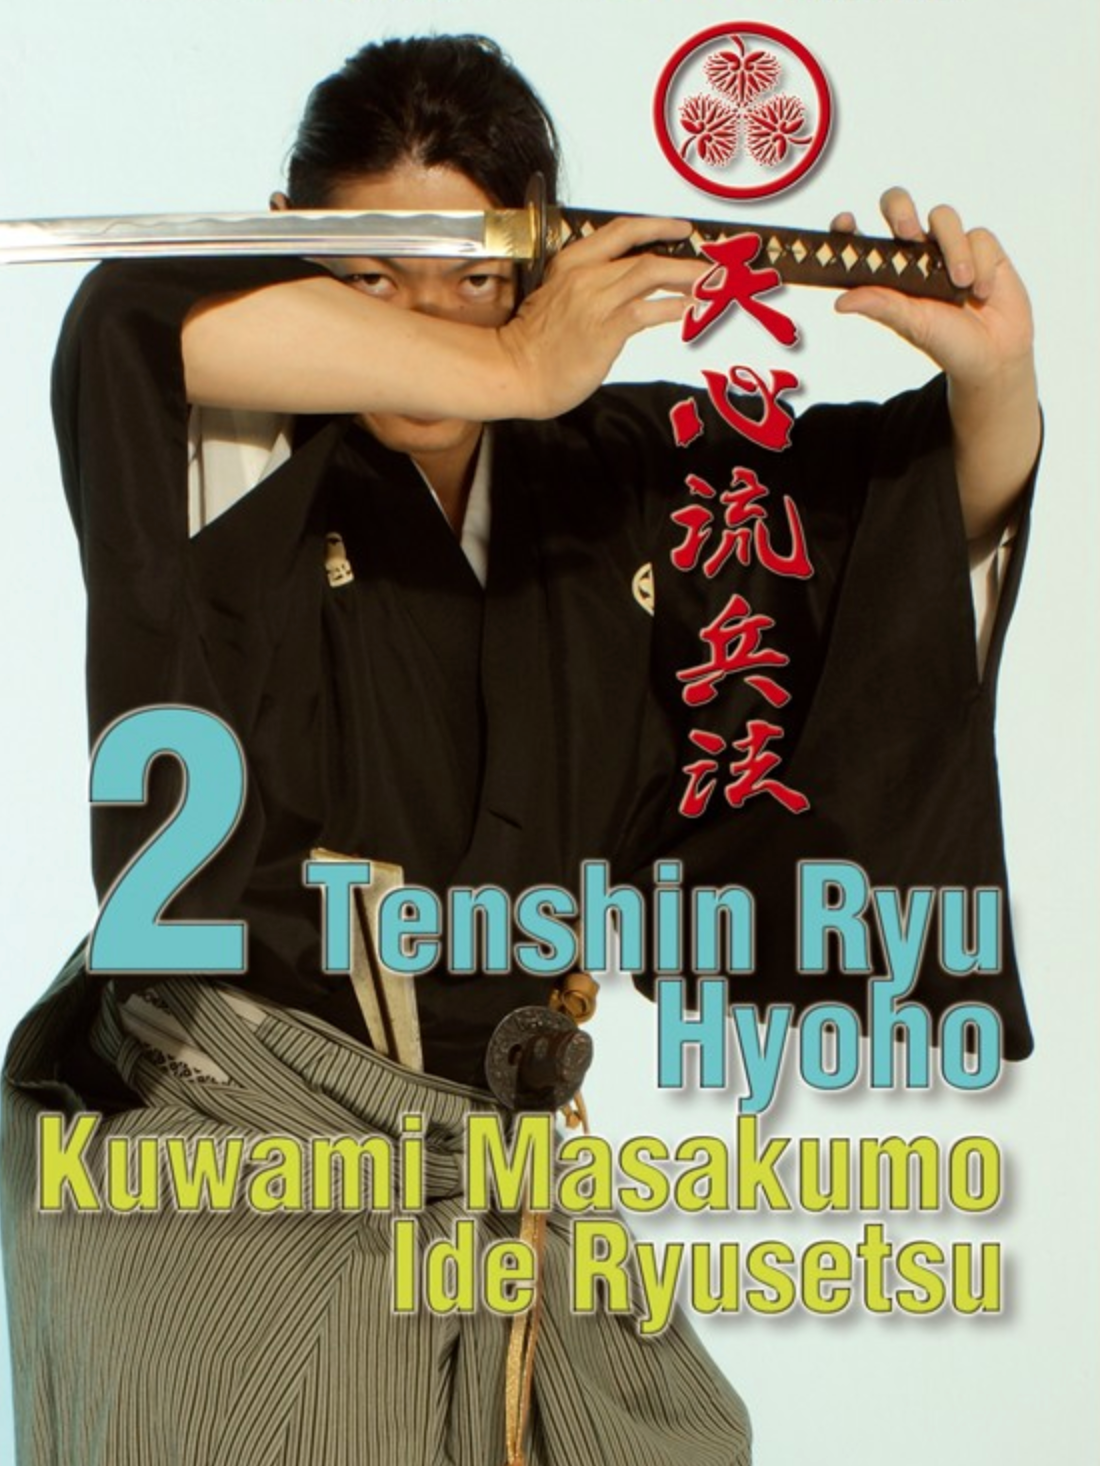 Tenshin-Ryu Hyoho DVD 2 by Kuwami Masakumo & Ide Ryusetsu - Budovideos Inc